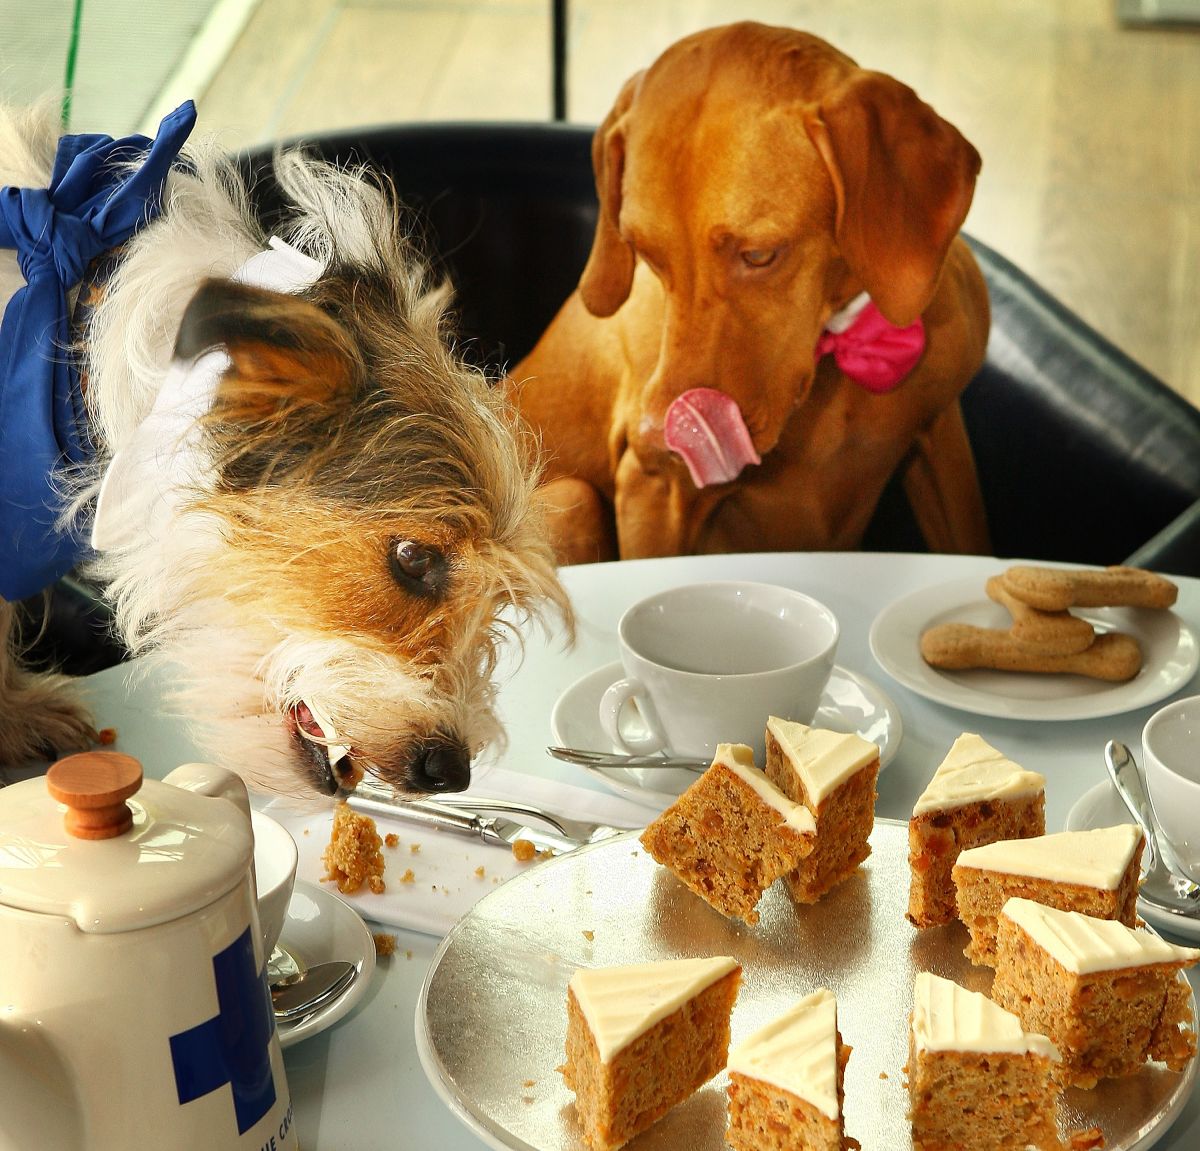 El estatuto permite a propietarios y gerentes de restaurantes y cafés decidir si dejan ingresar a los animales. (Getty Images)